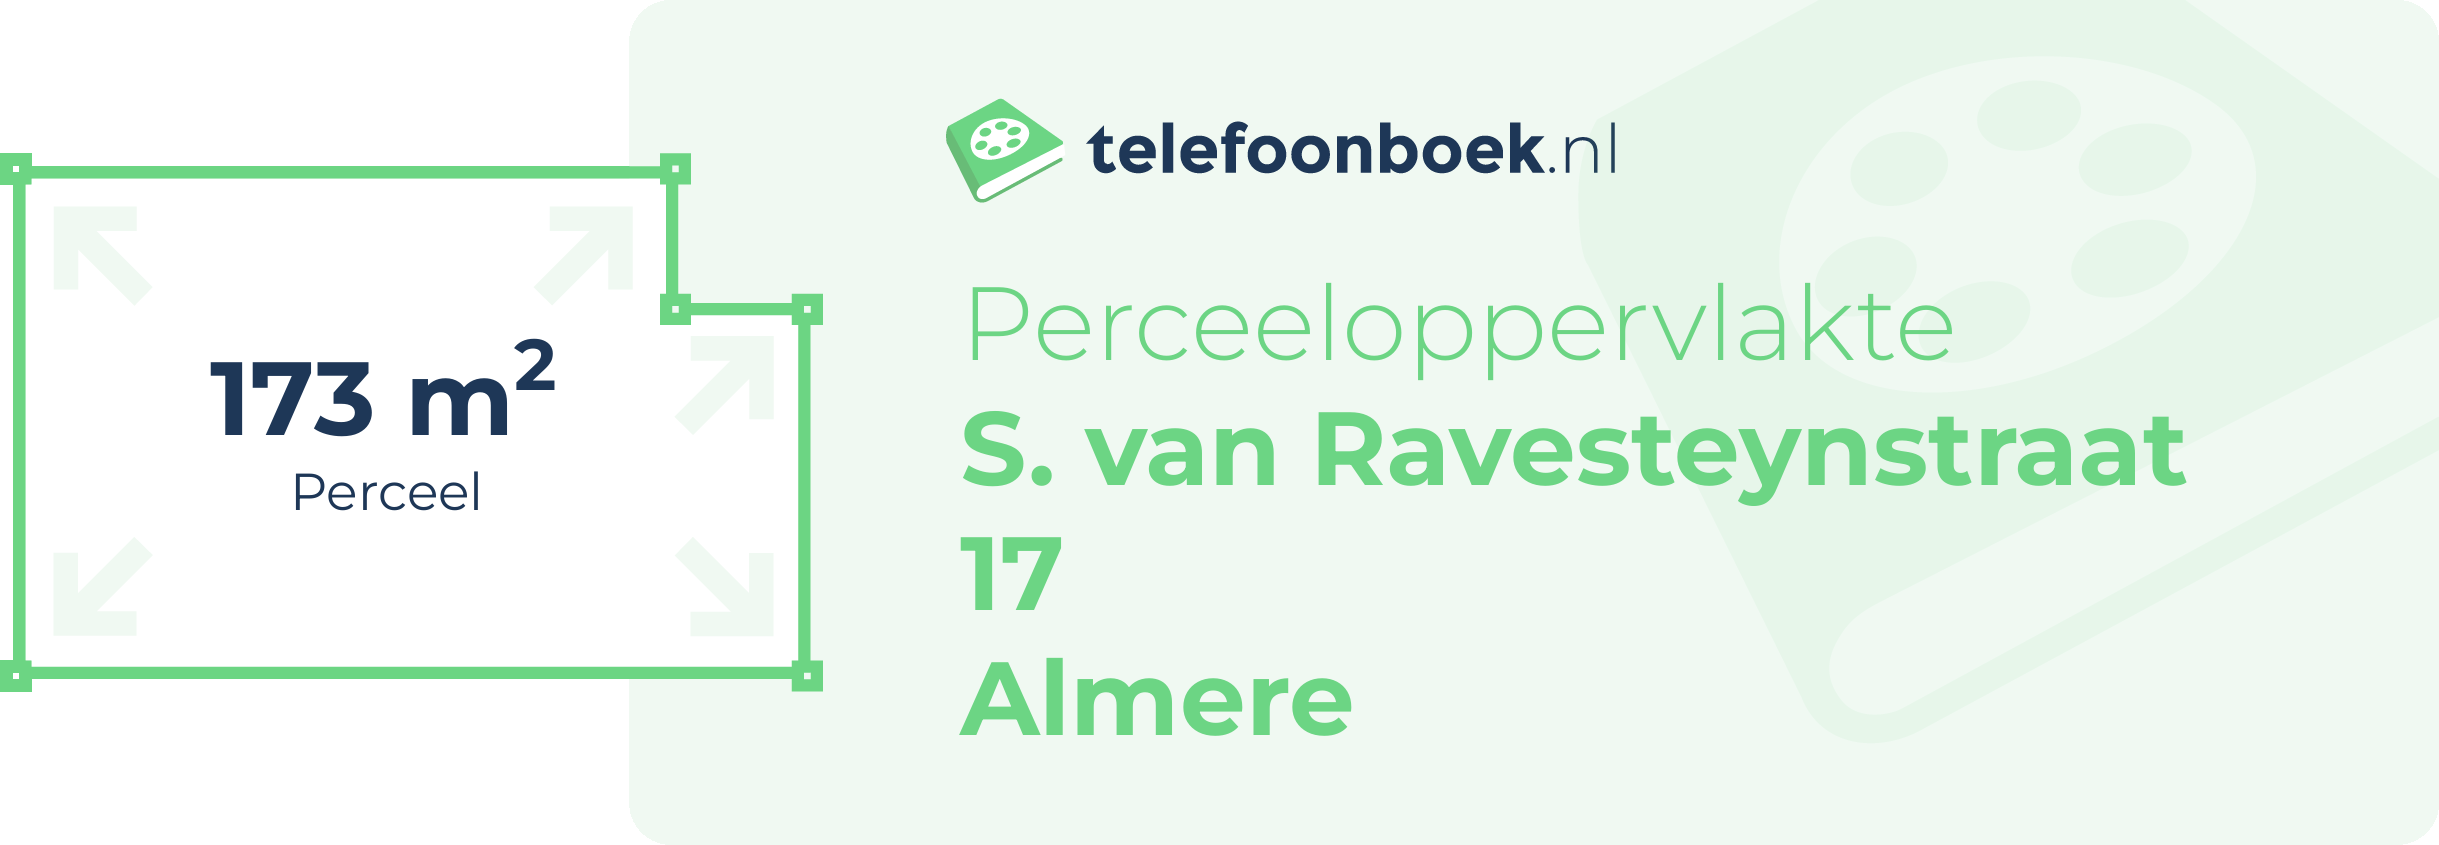 Perceeloppervlakte S. Van Ravesteynstraat 17 Almere